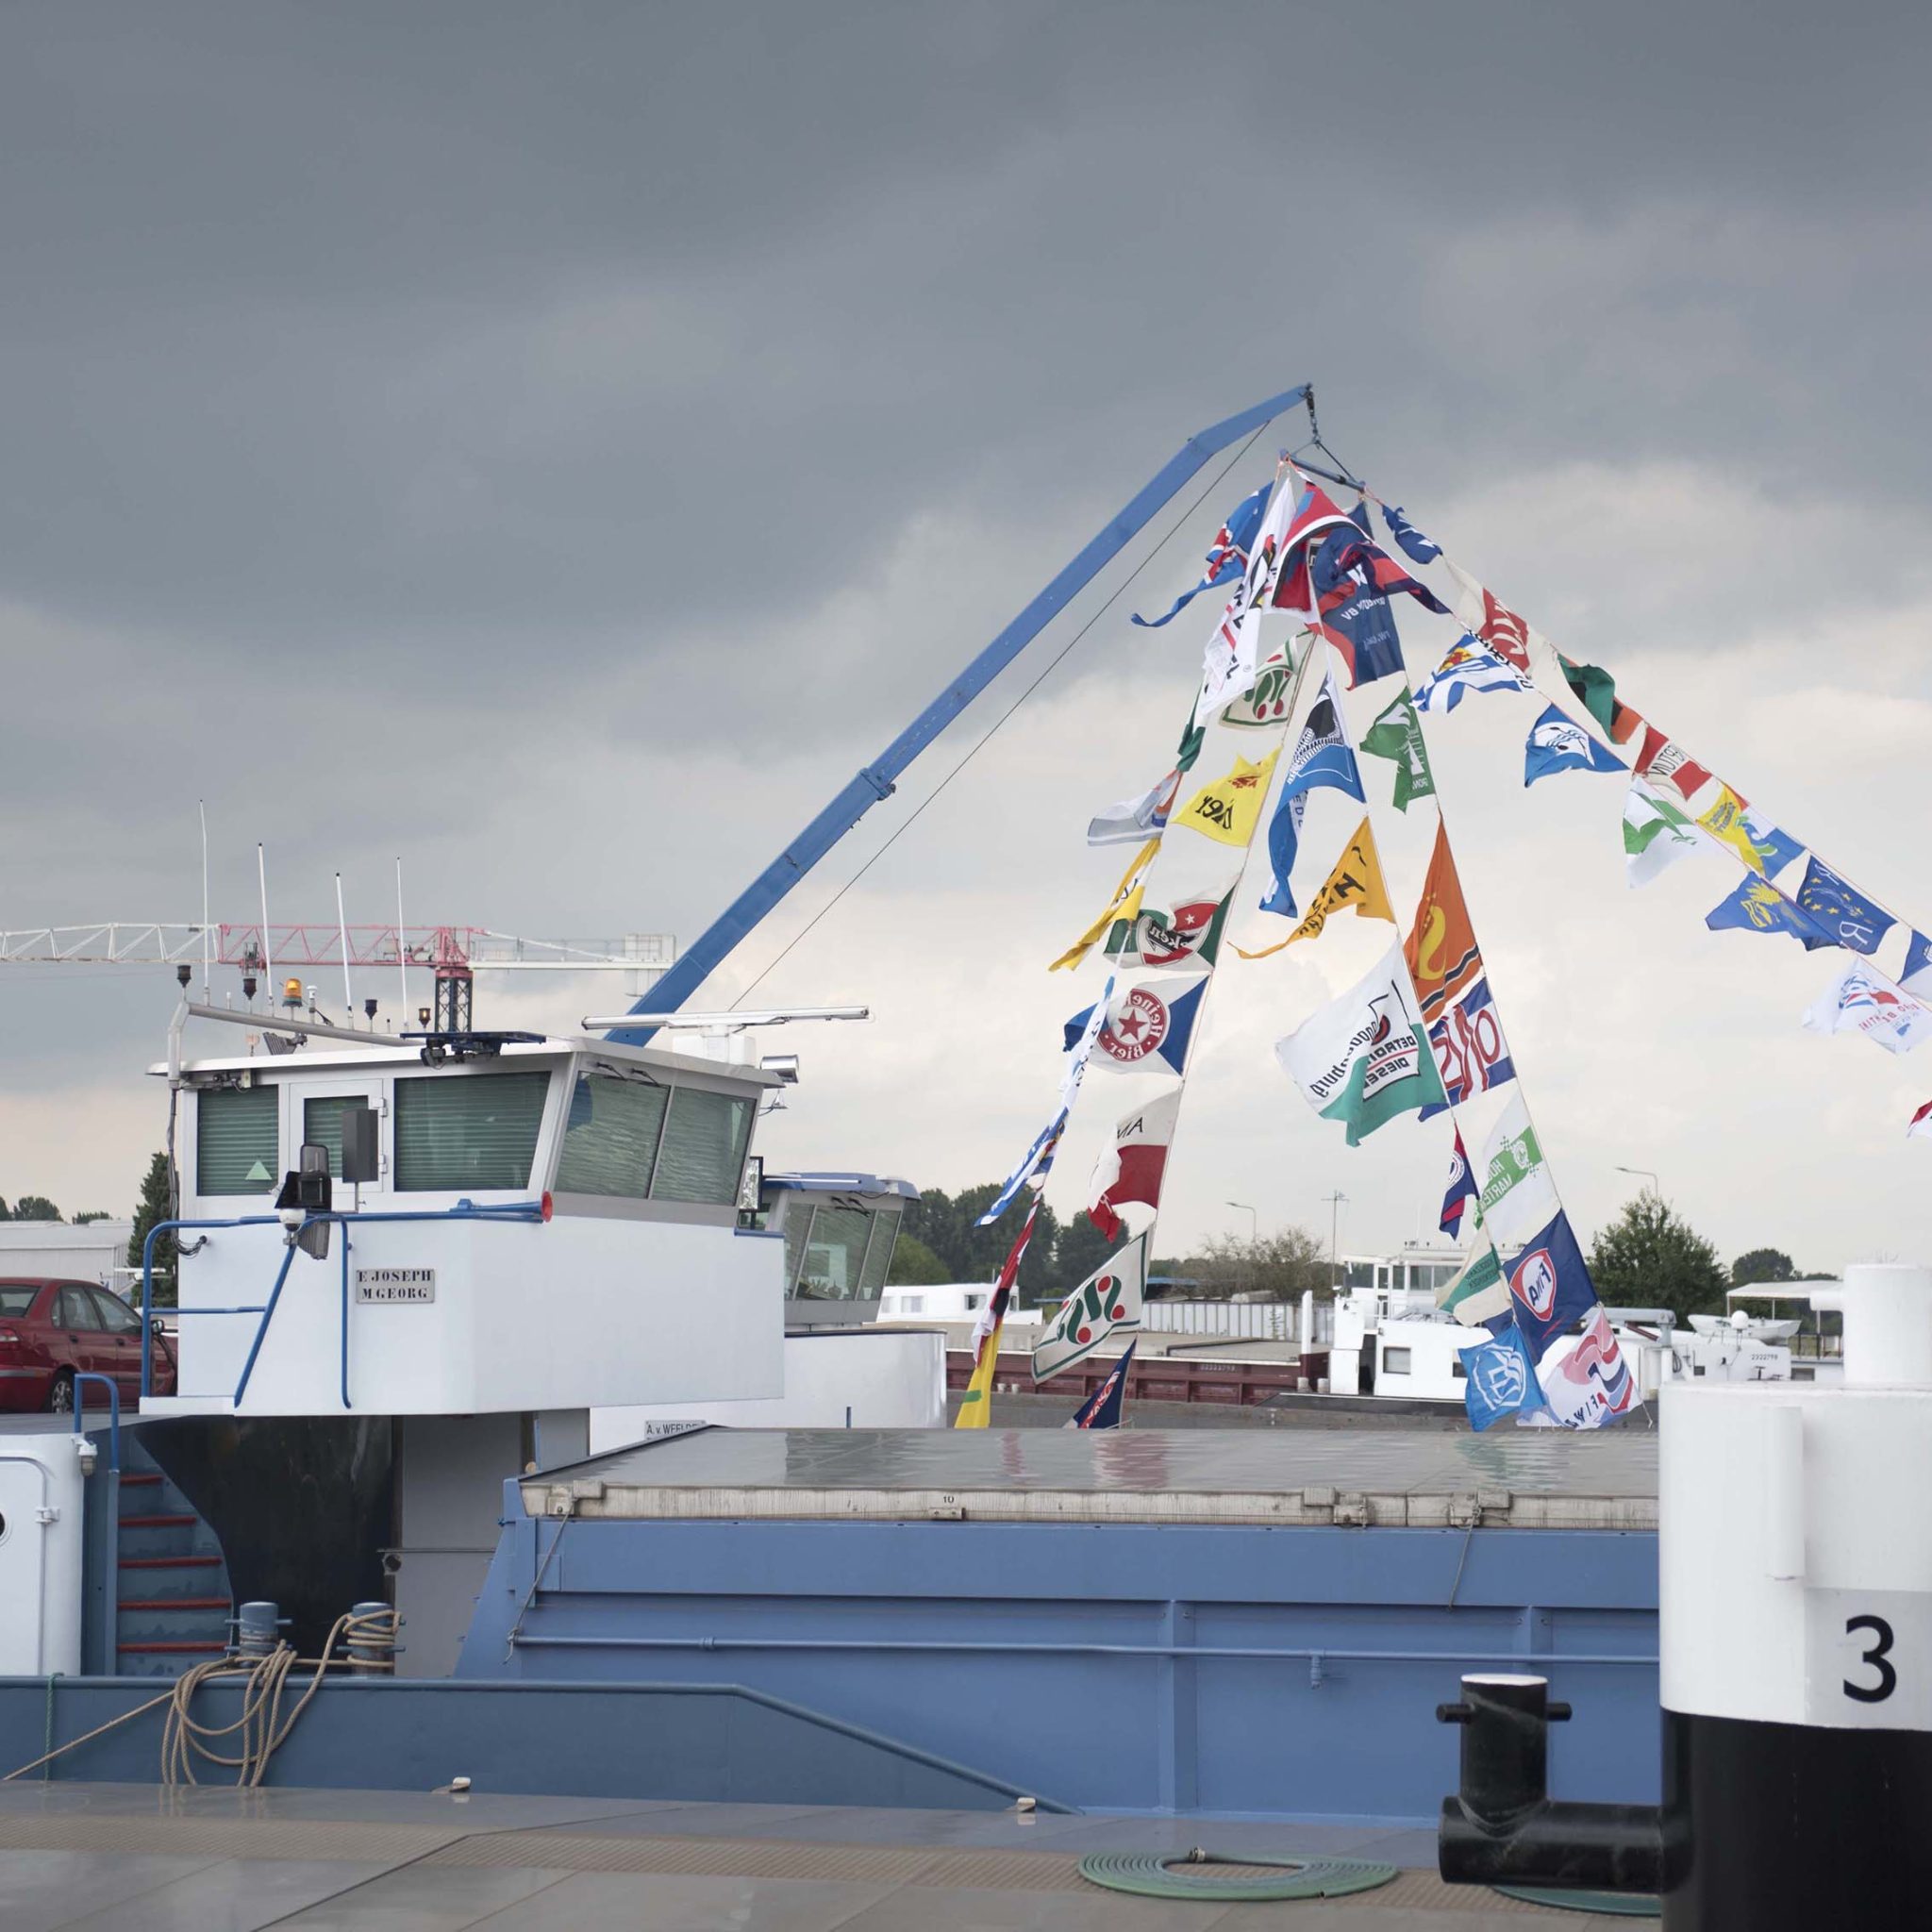 De haven van Maasbracht ligt tijdens de Havendagen weer vol met gepavoiseerde schepen. (Foto Erik van Huizen)